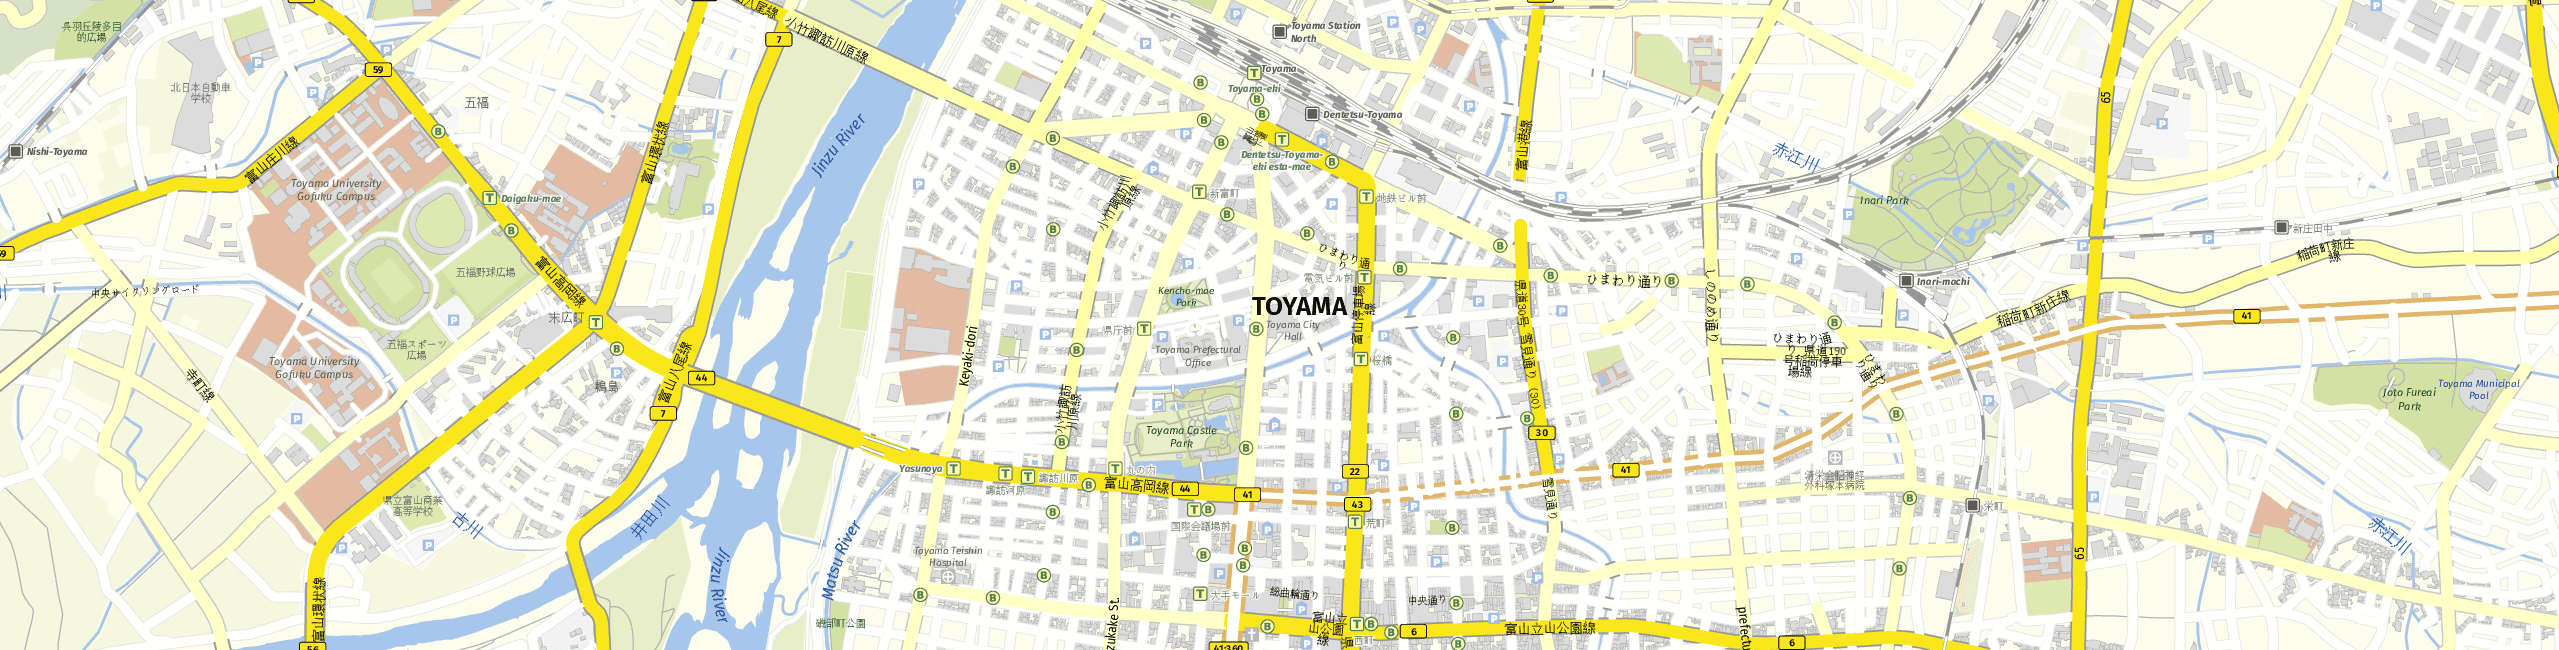 Stadtplan Toyama zum Downloaden.